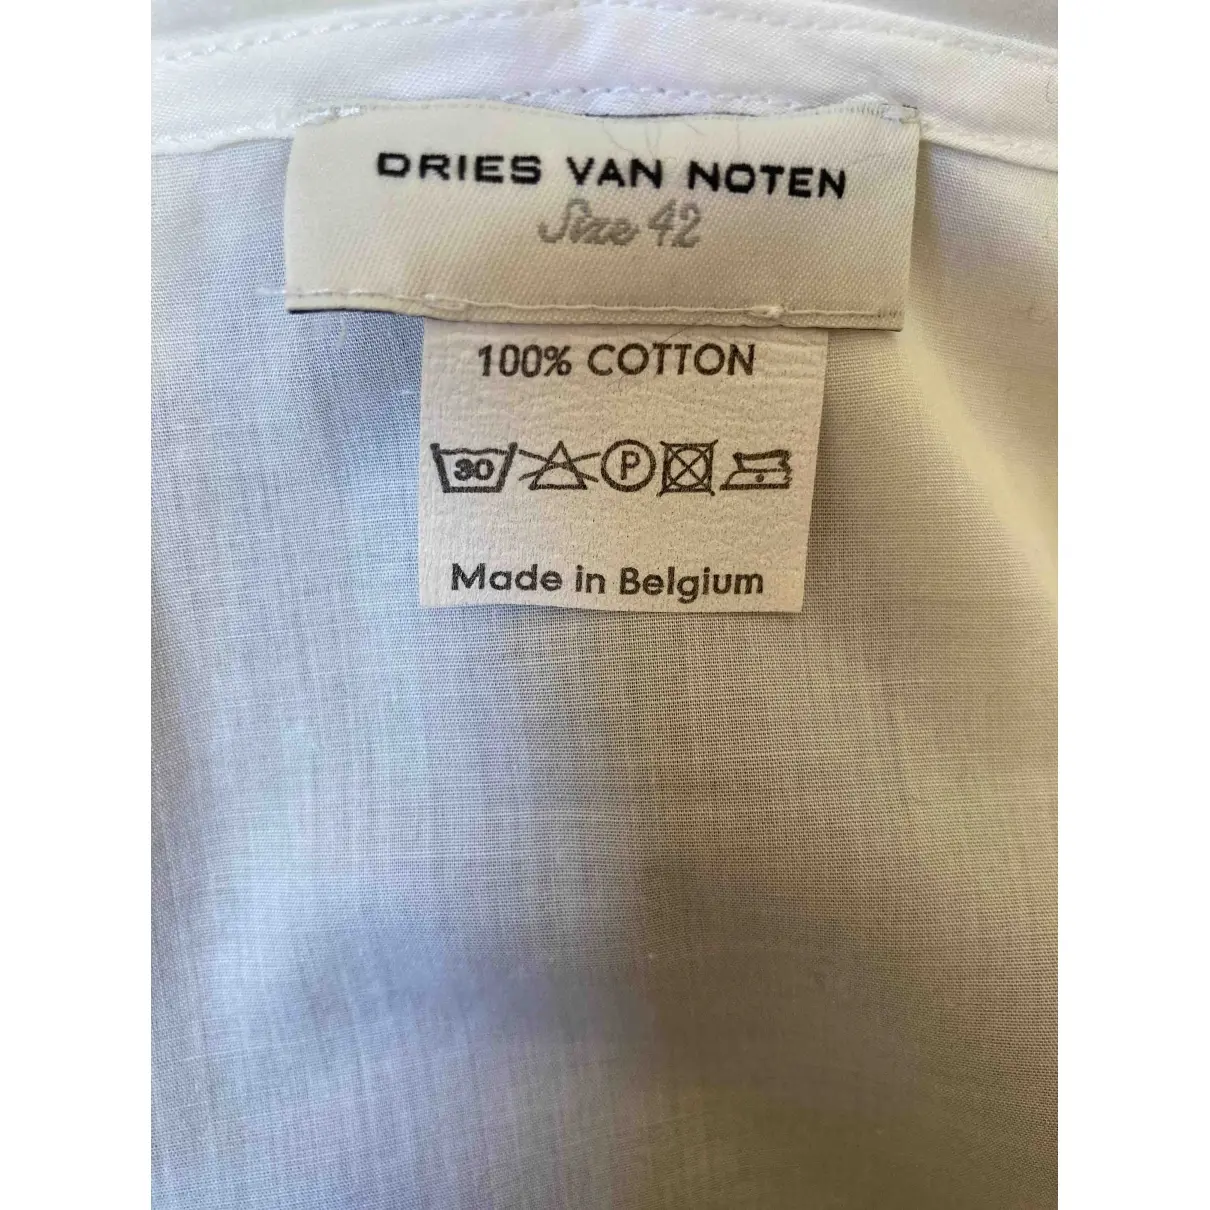 Buy Dries Van Noten White Cotton Top online - Vintage